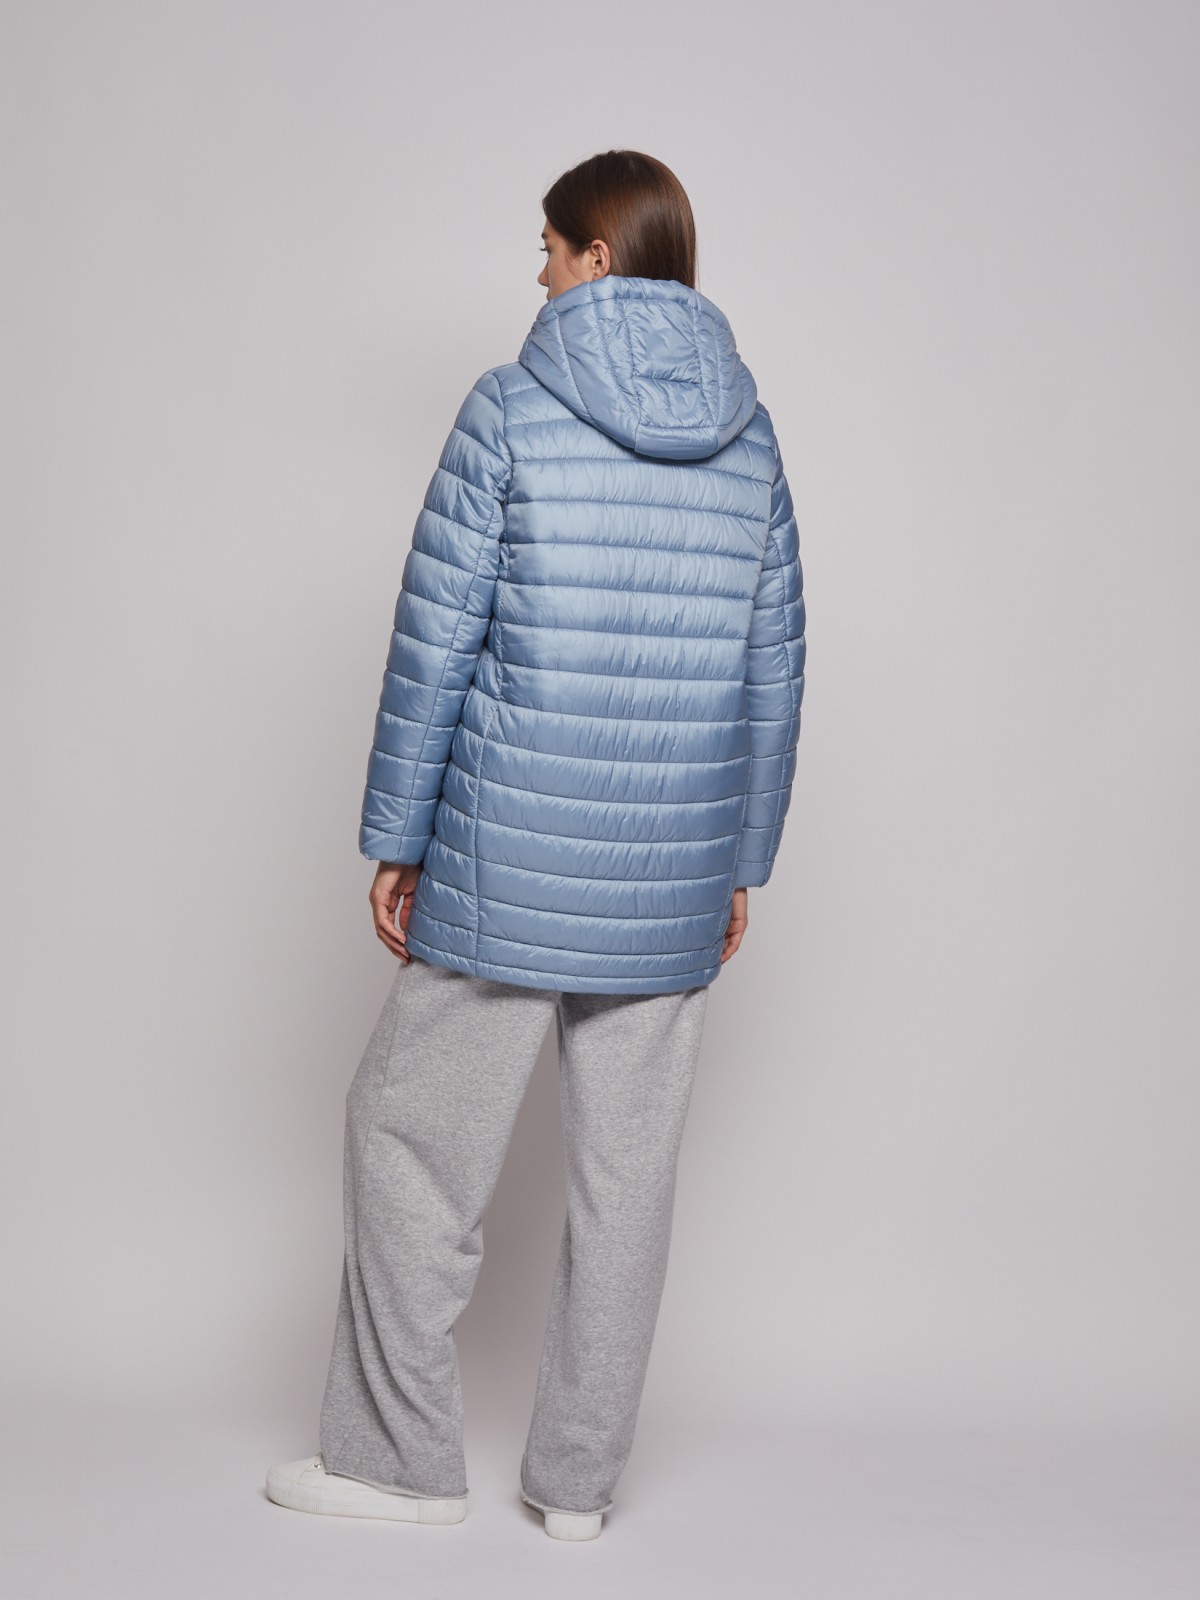 Утеплённое пальто с капюшоном zolla 022335212024, цвет голубой, размер XS - фото 5